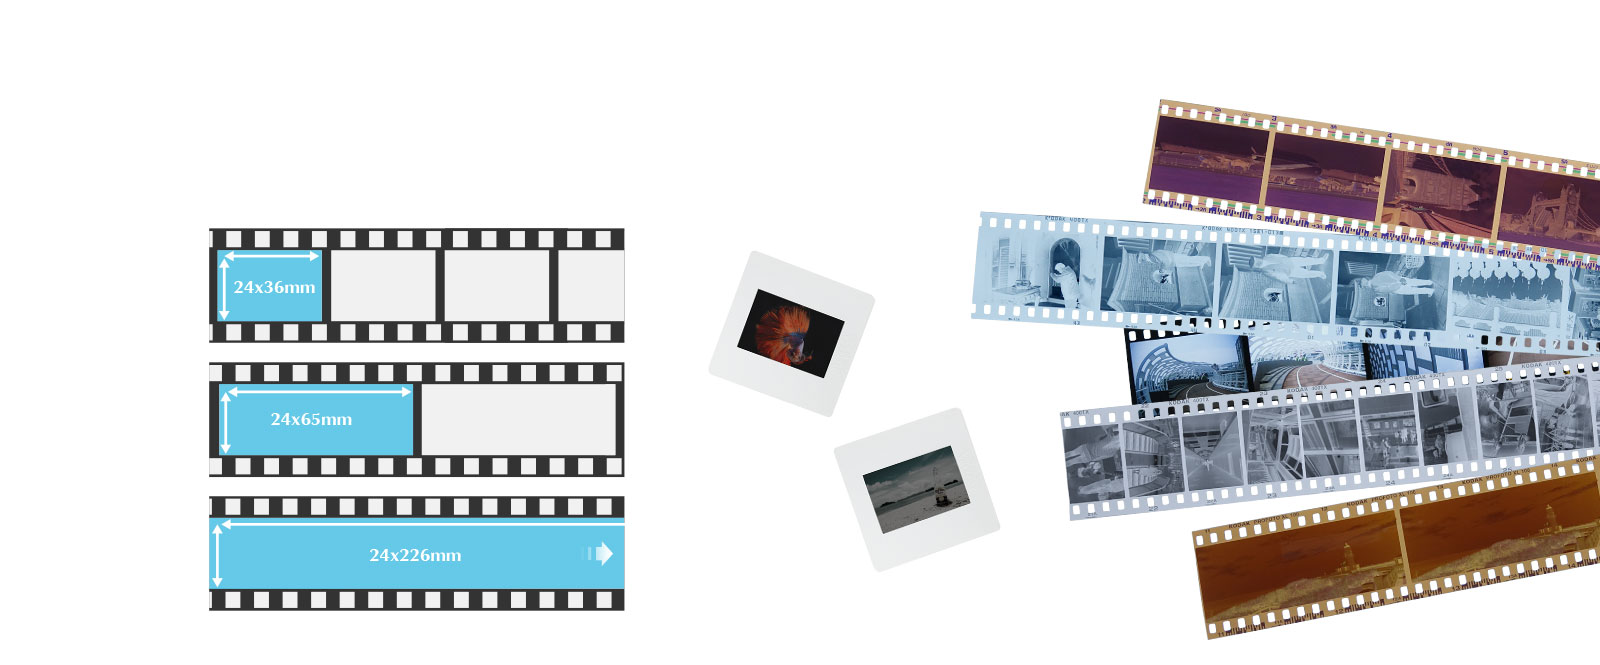 Plustek OpticFilm 135iは、35mmフィルムをデジタルに変換する最も簡単な方法です。